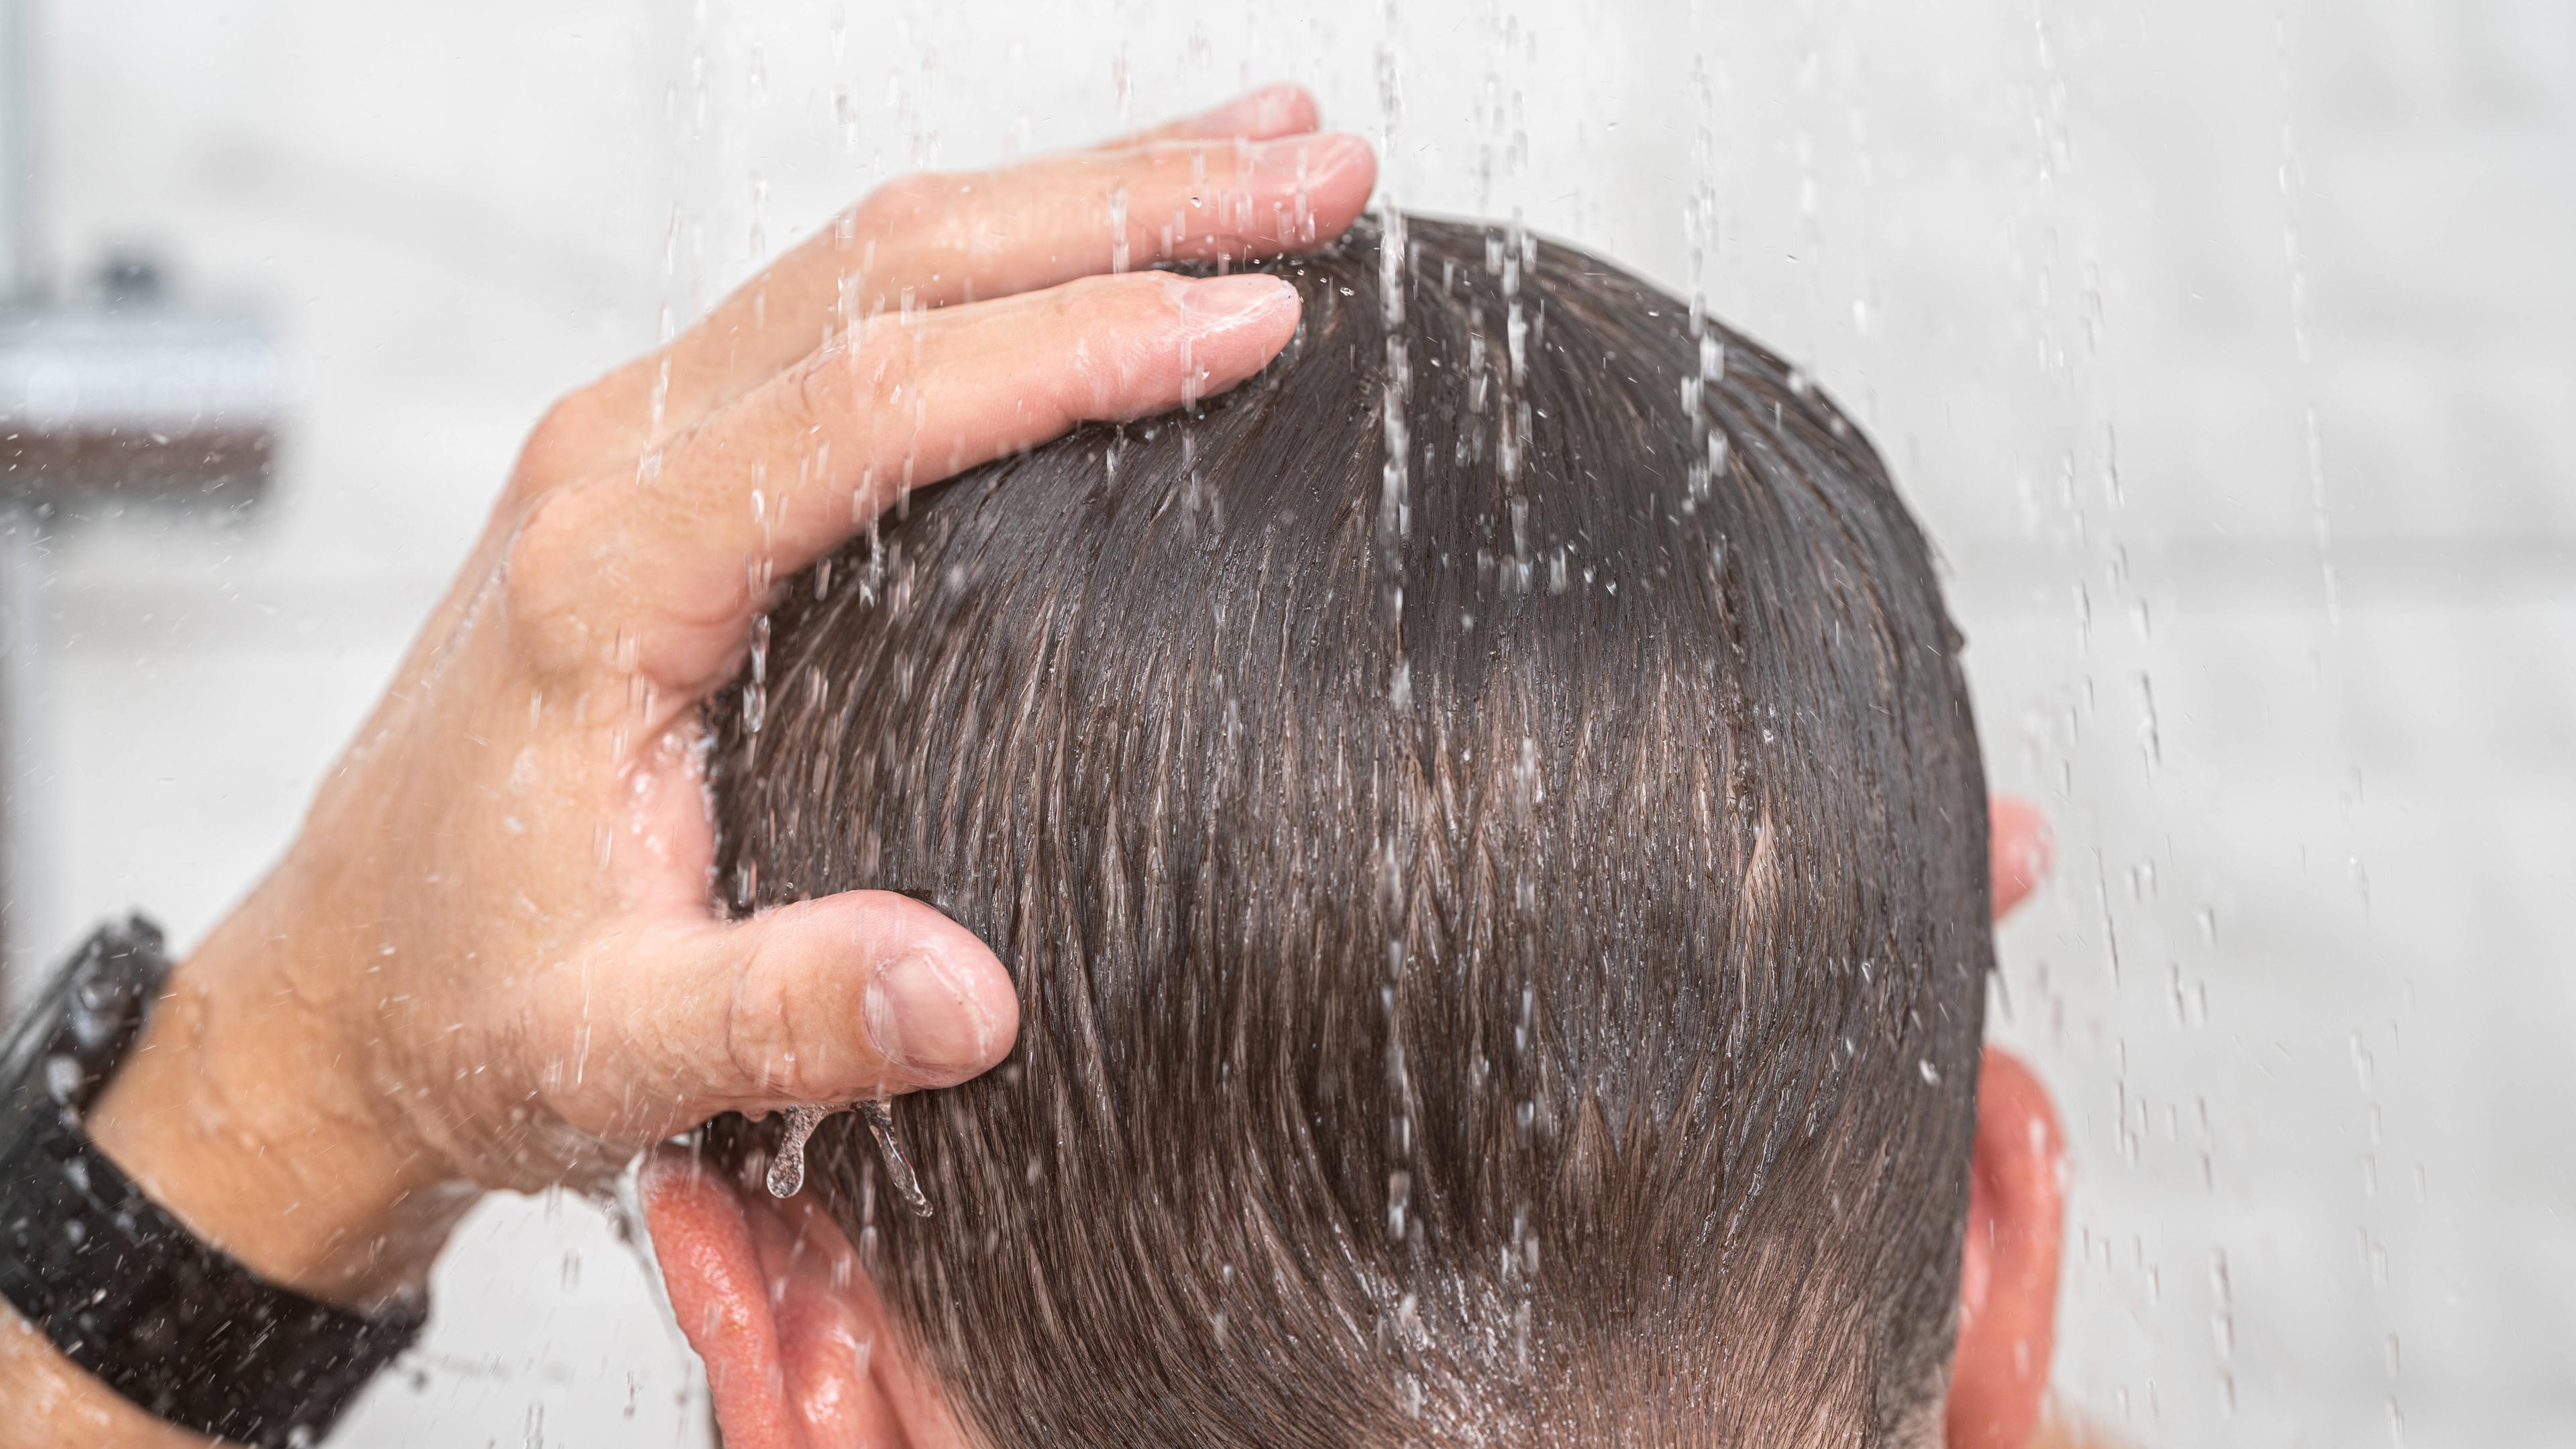 Kopf eines Mannes unter der Dusche, die Haare sind nass.